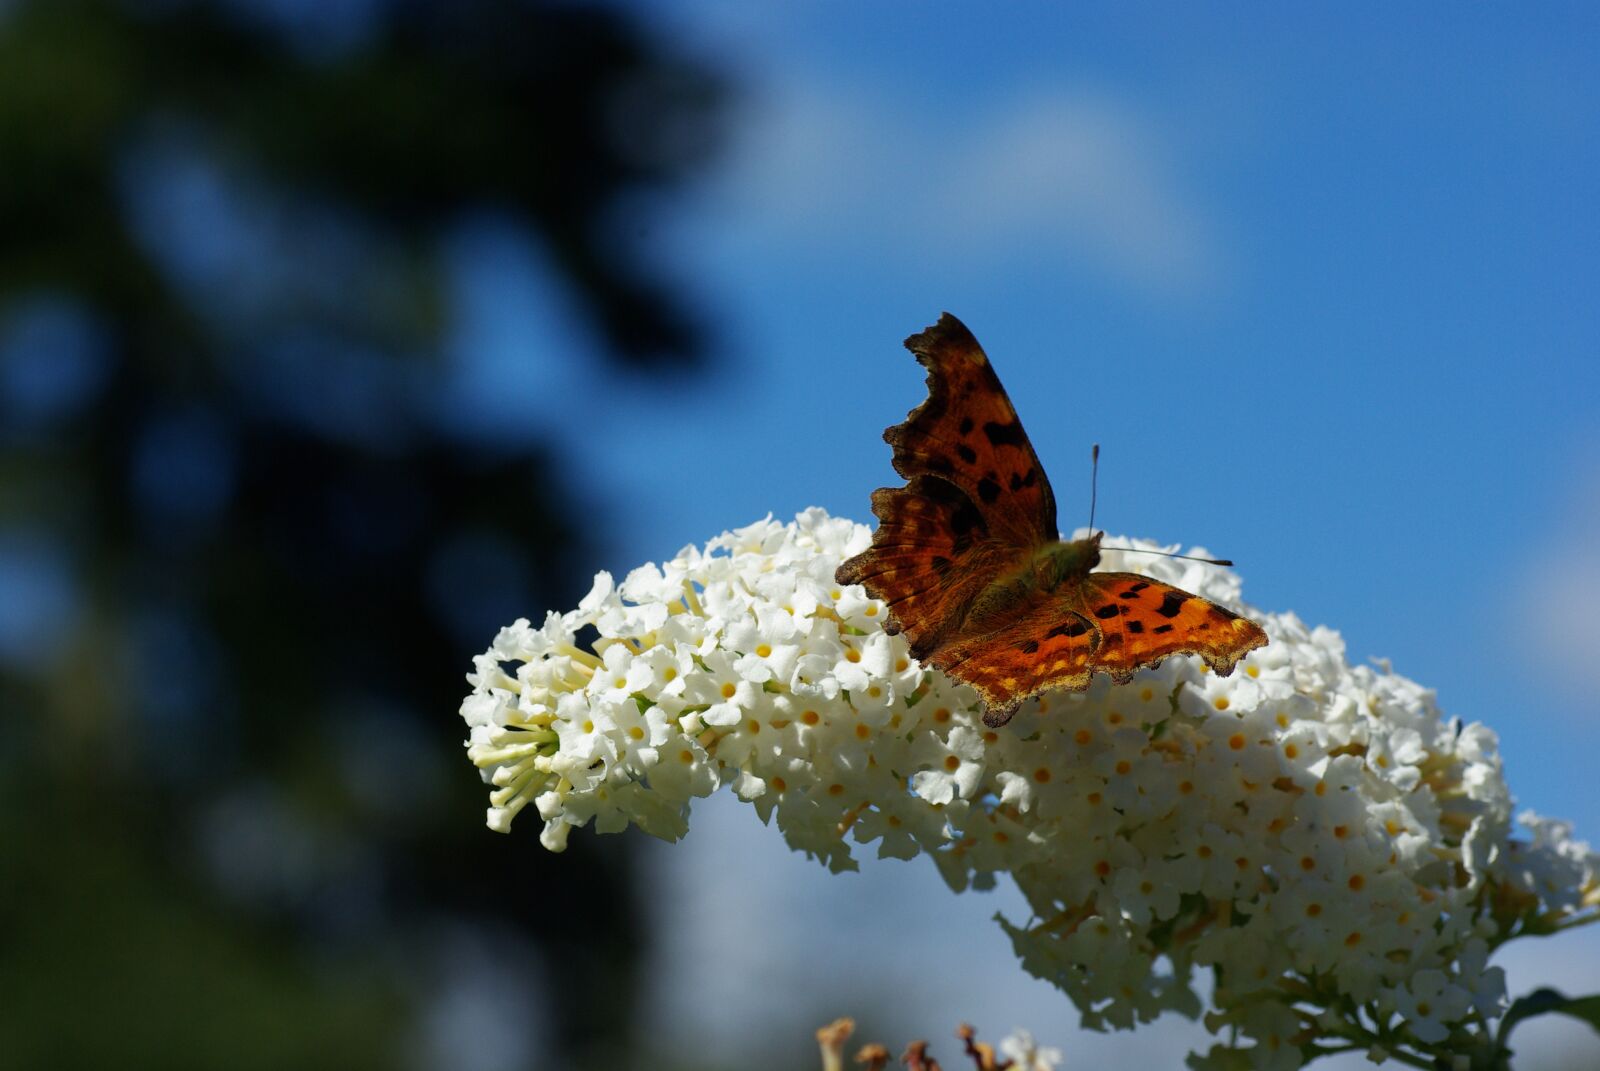 Pentax K10D sample photo. Butterfly, butterfly bush, blue photography